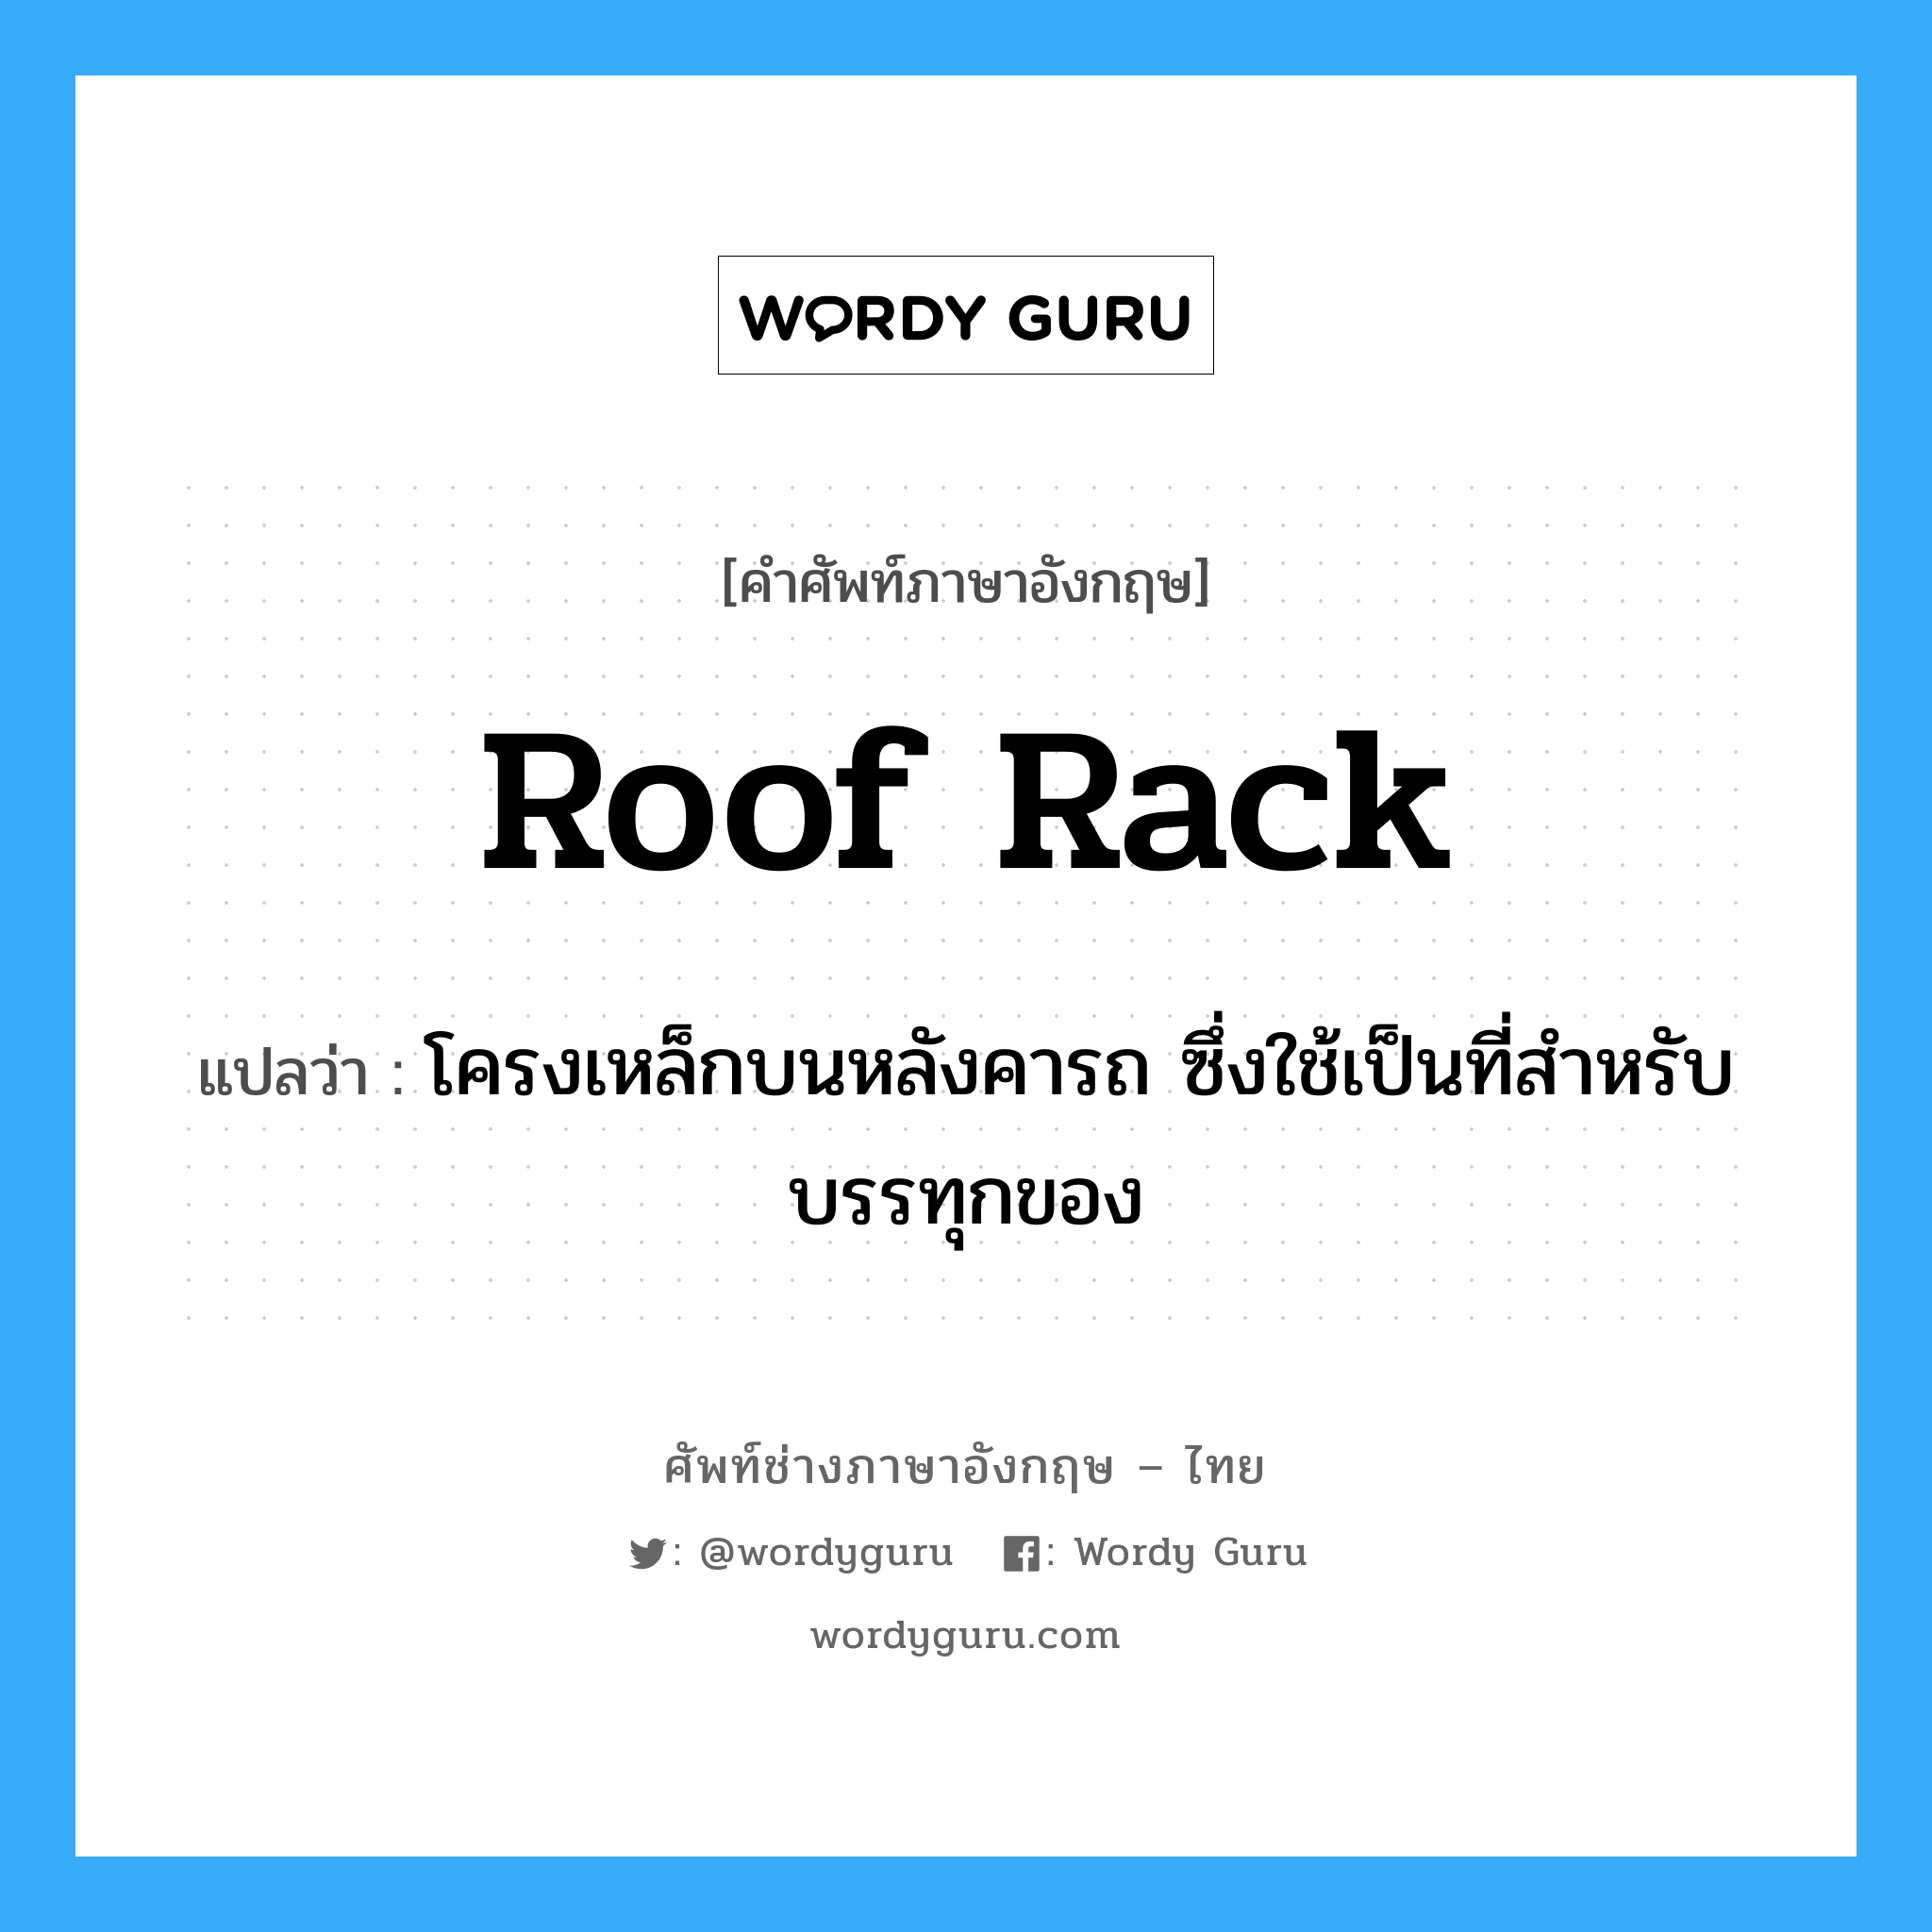 roof rack แปลว่า?, คำศัพท์ช่างภาษาอังกฤษ - ไทย roof rack คำศัพท์ภาษาอังกฤษ roof rack แปลว่า โครงเหล็กบนหลังคารถ ซึ่งใช้เป็นที่สำหรับบรรทุกของ